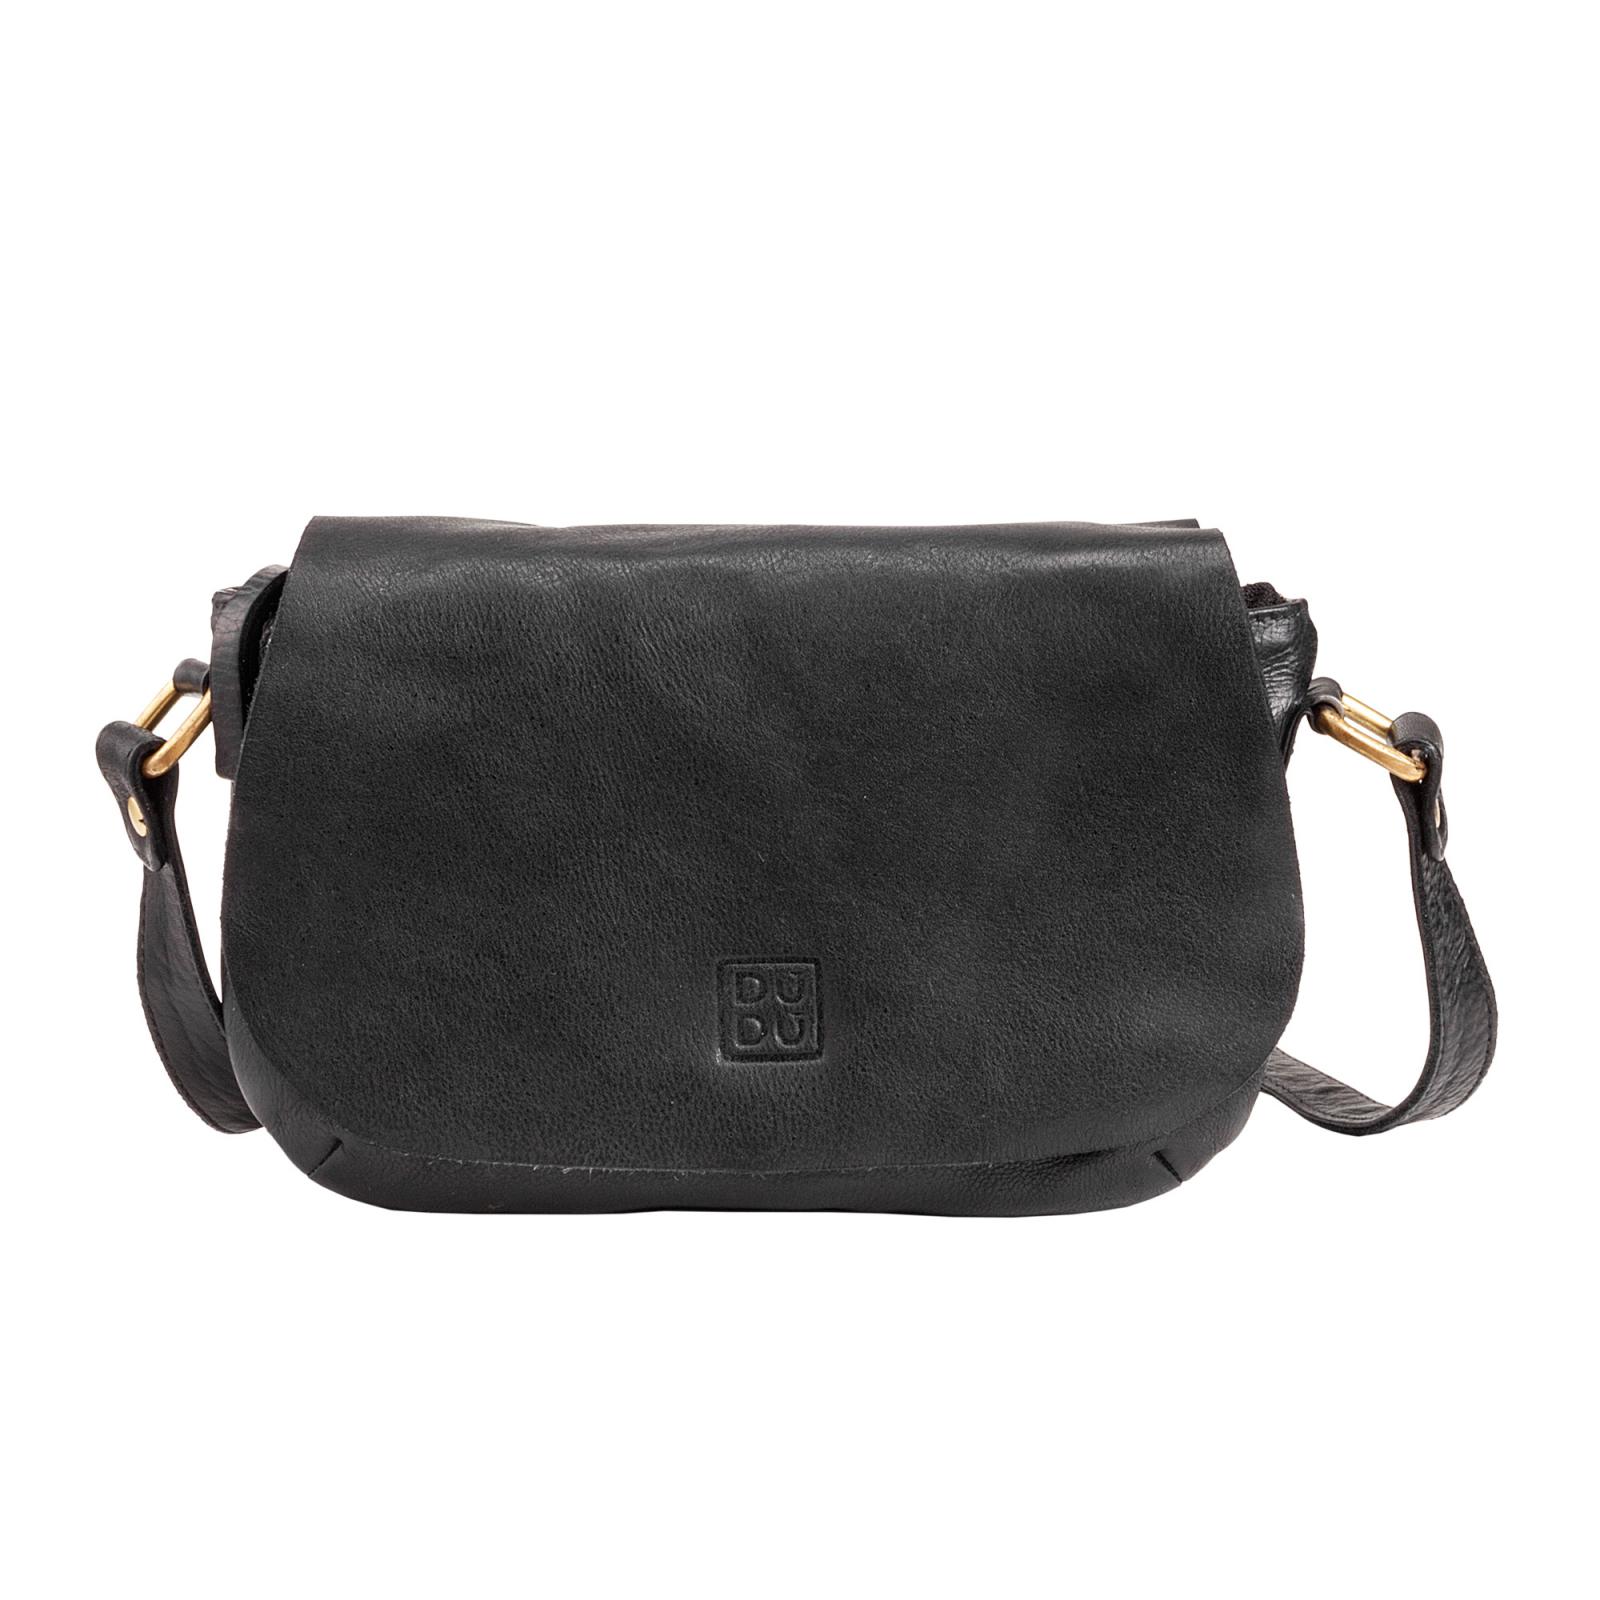 Borse  Donna  Timeless - Mini Bag  - Black Slate